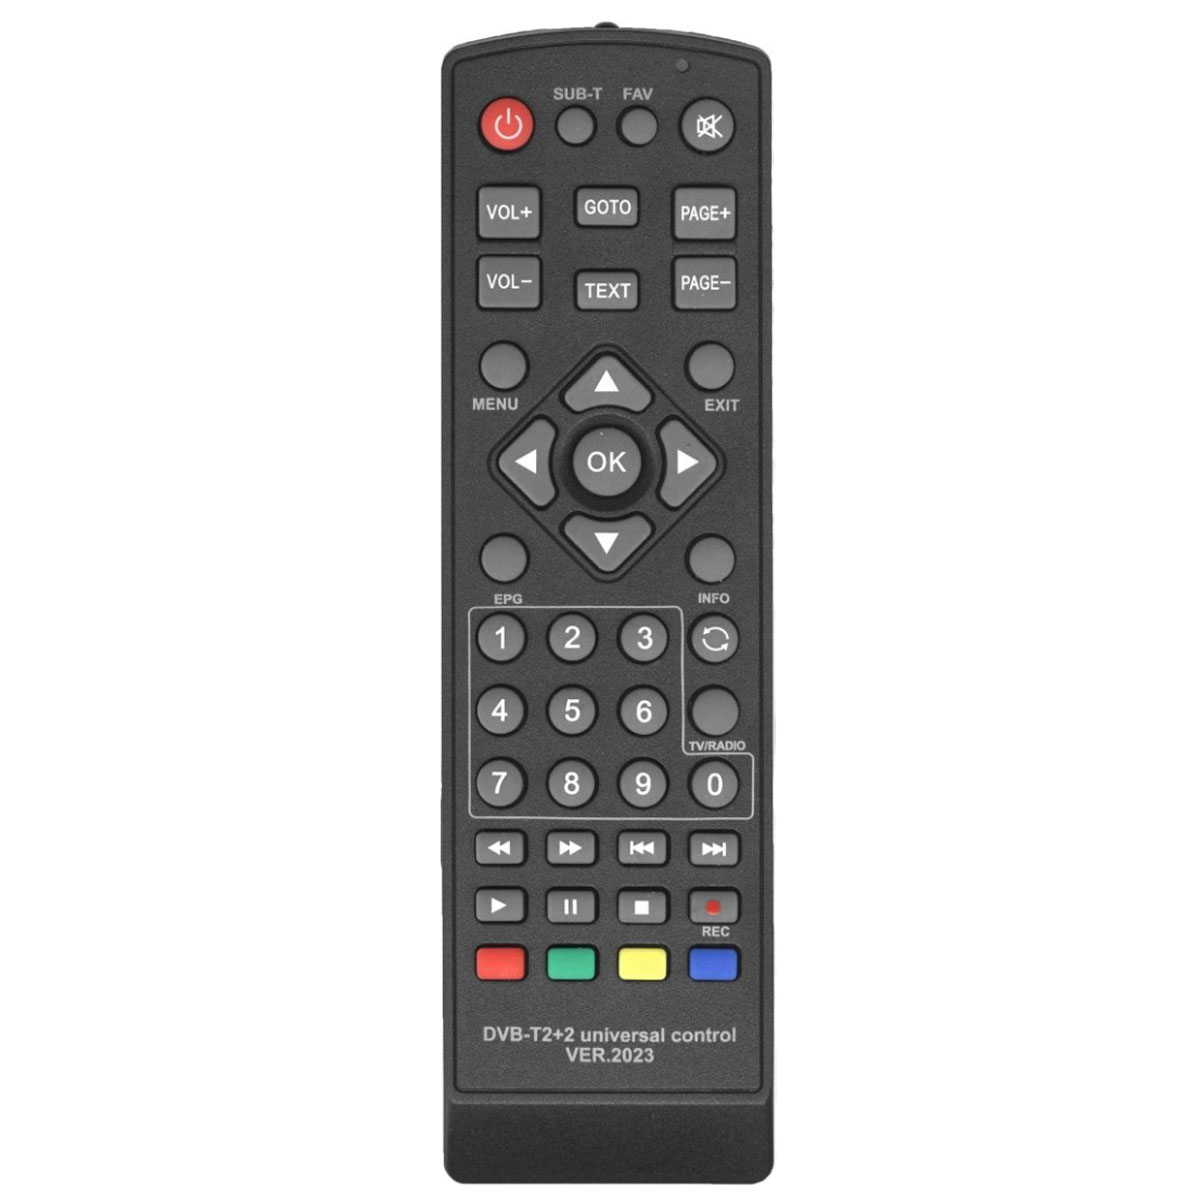 Пульт ДУ универсальный DVB-T2+2 VER.2023 для приставок цифрового ТВ, цвет черный